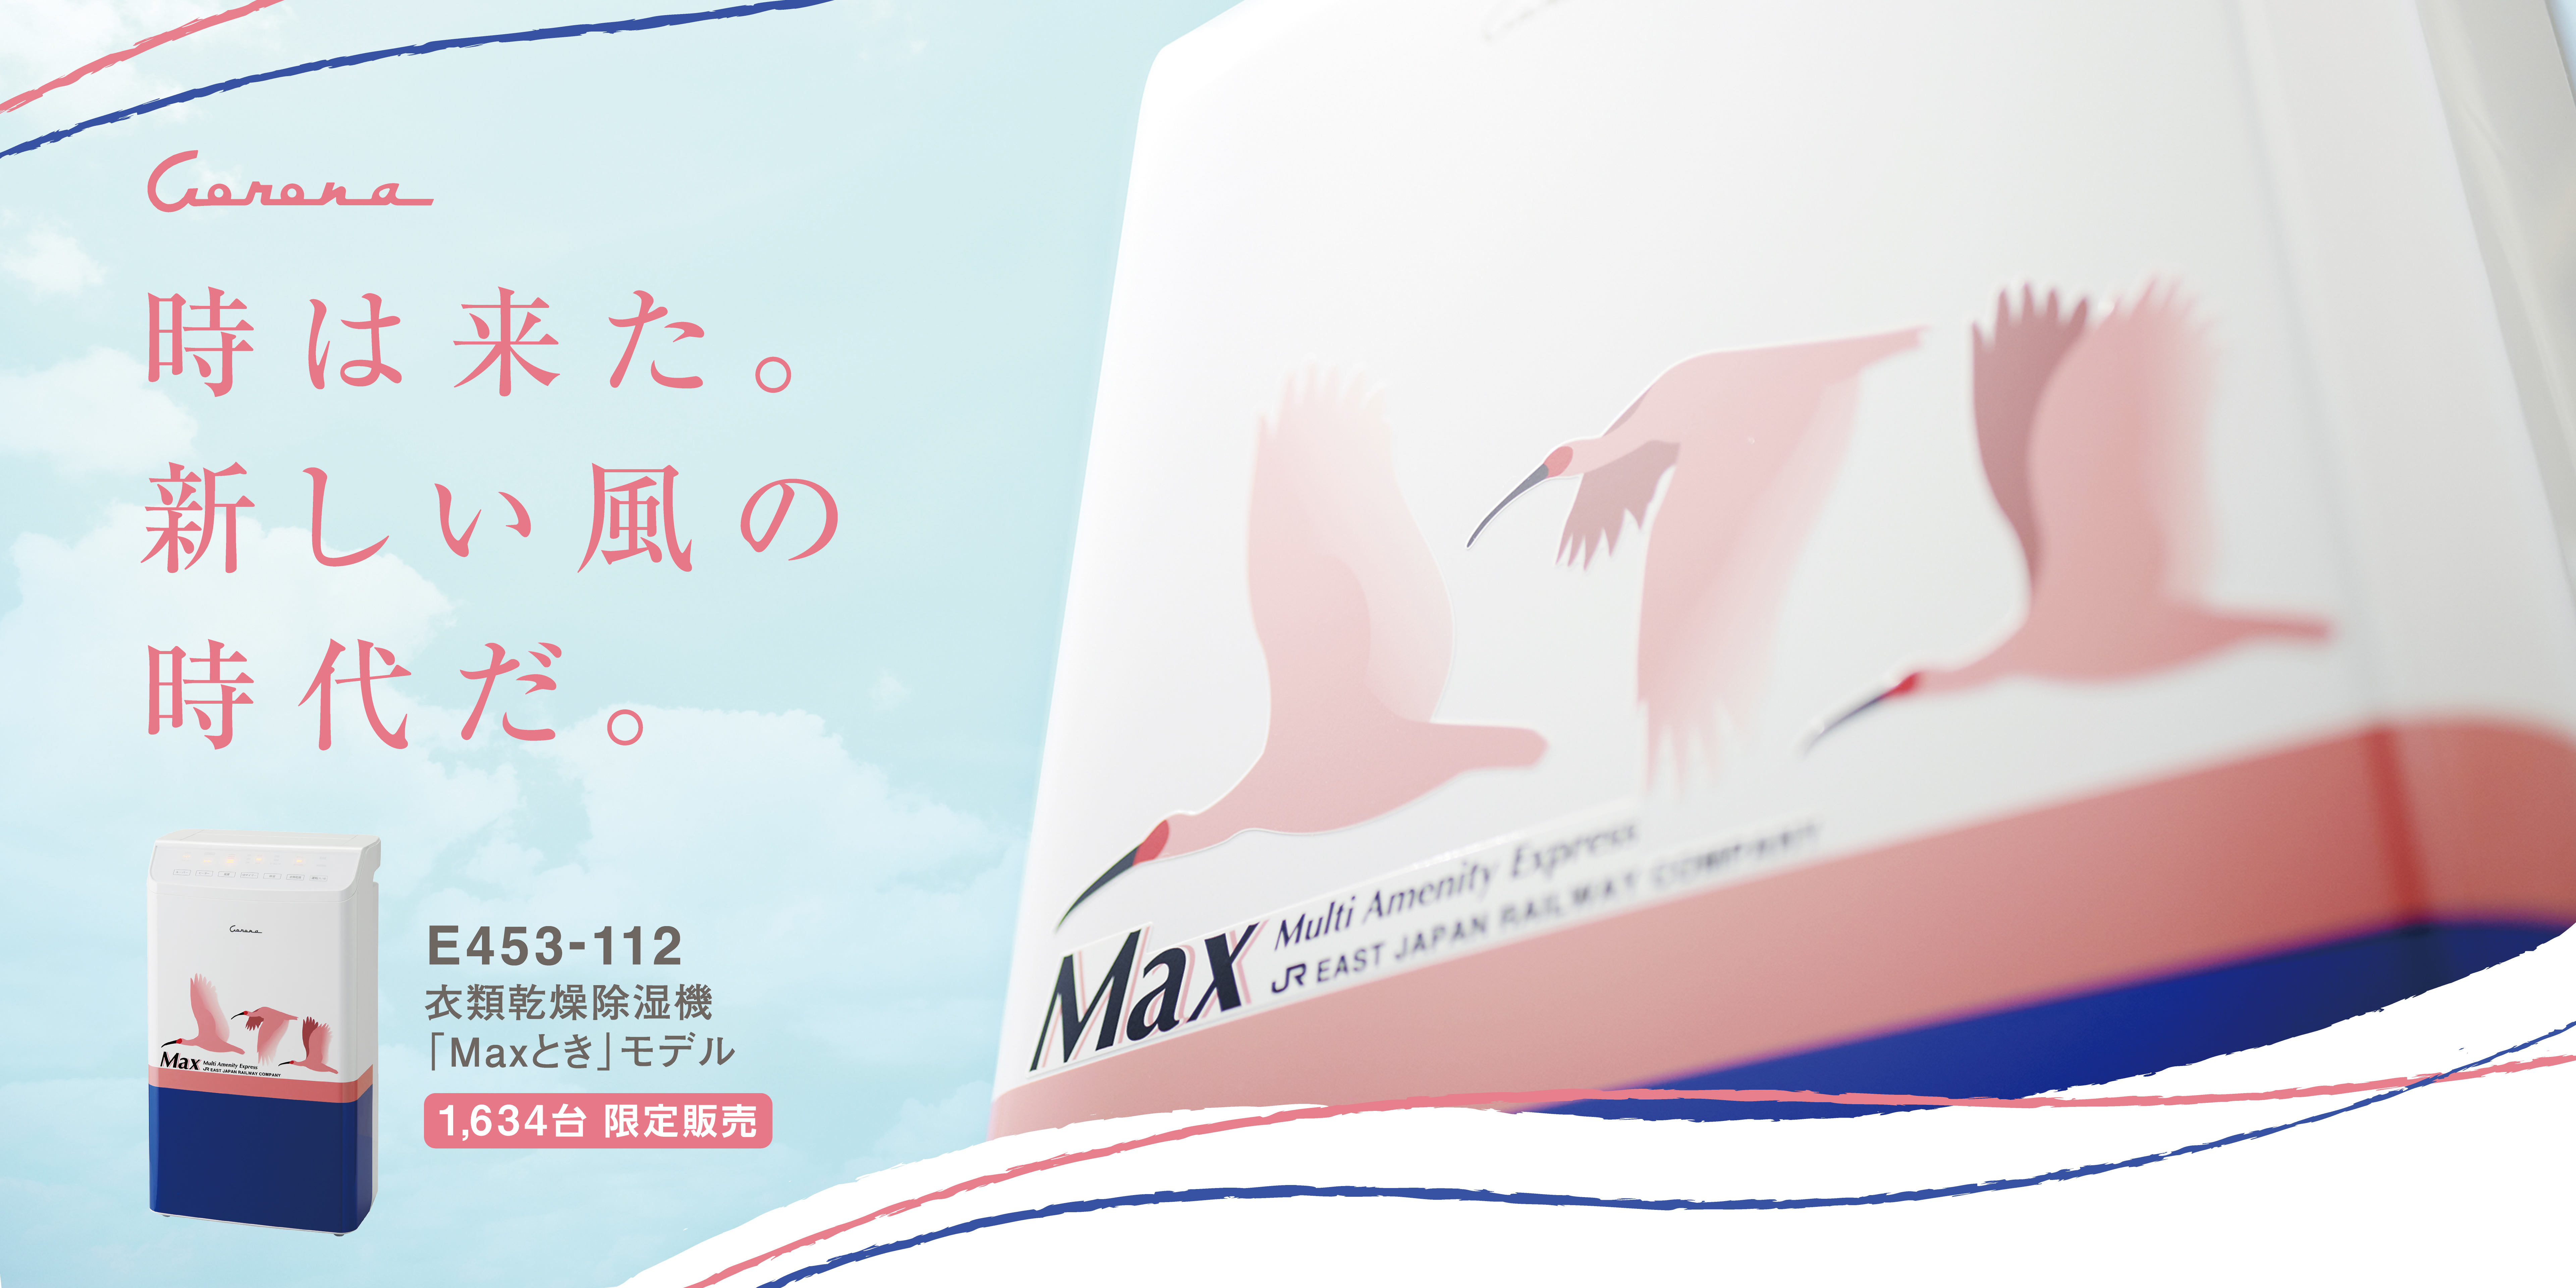 上越新幹線「Maxとき」モデルの衣類乾燥除湿機を限定販売！